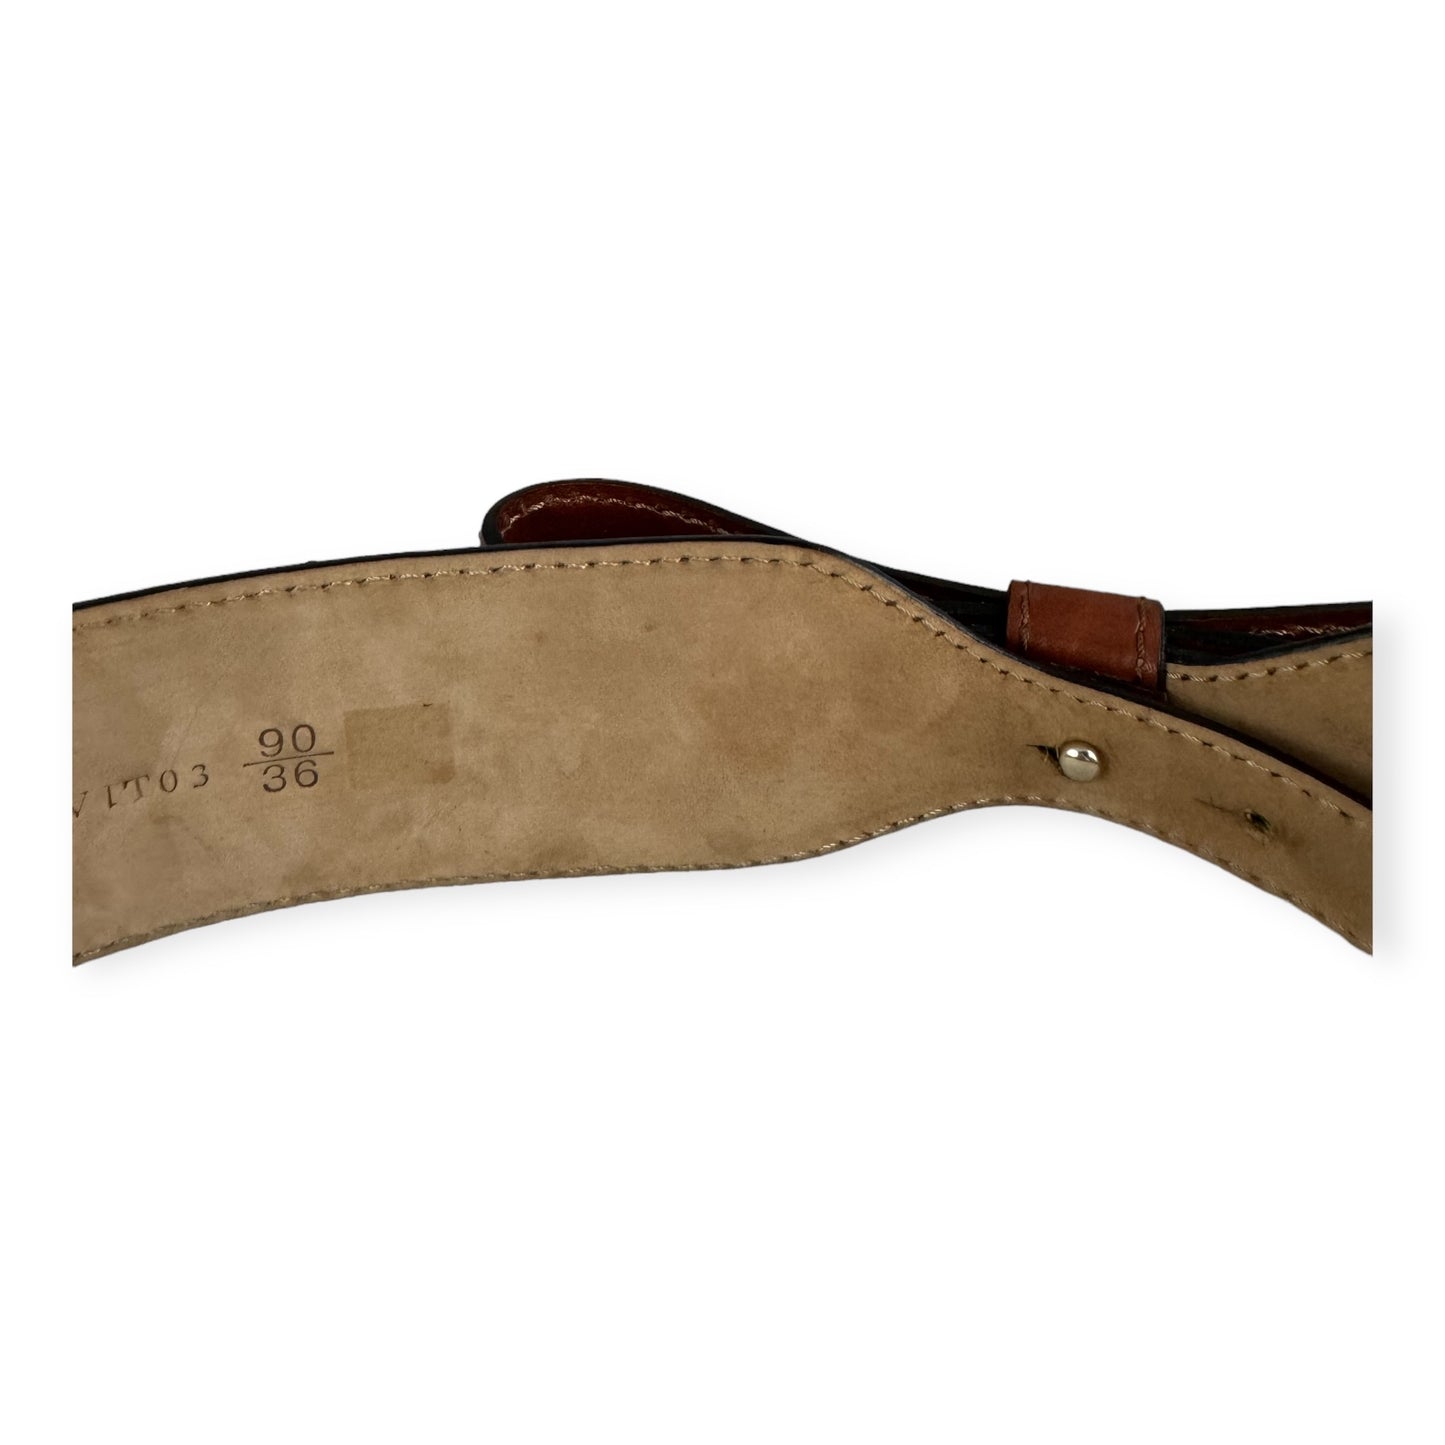 VALENTINO GARAVANI Bow Belt in Cognac | Size 90/36